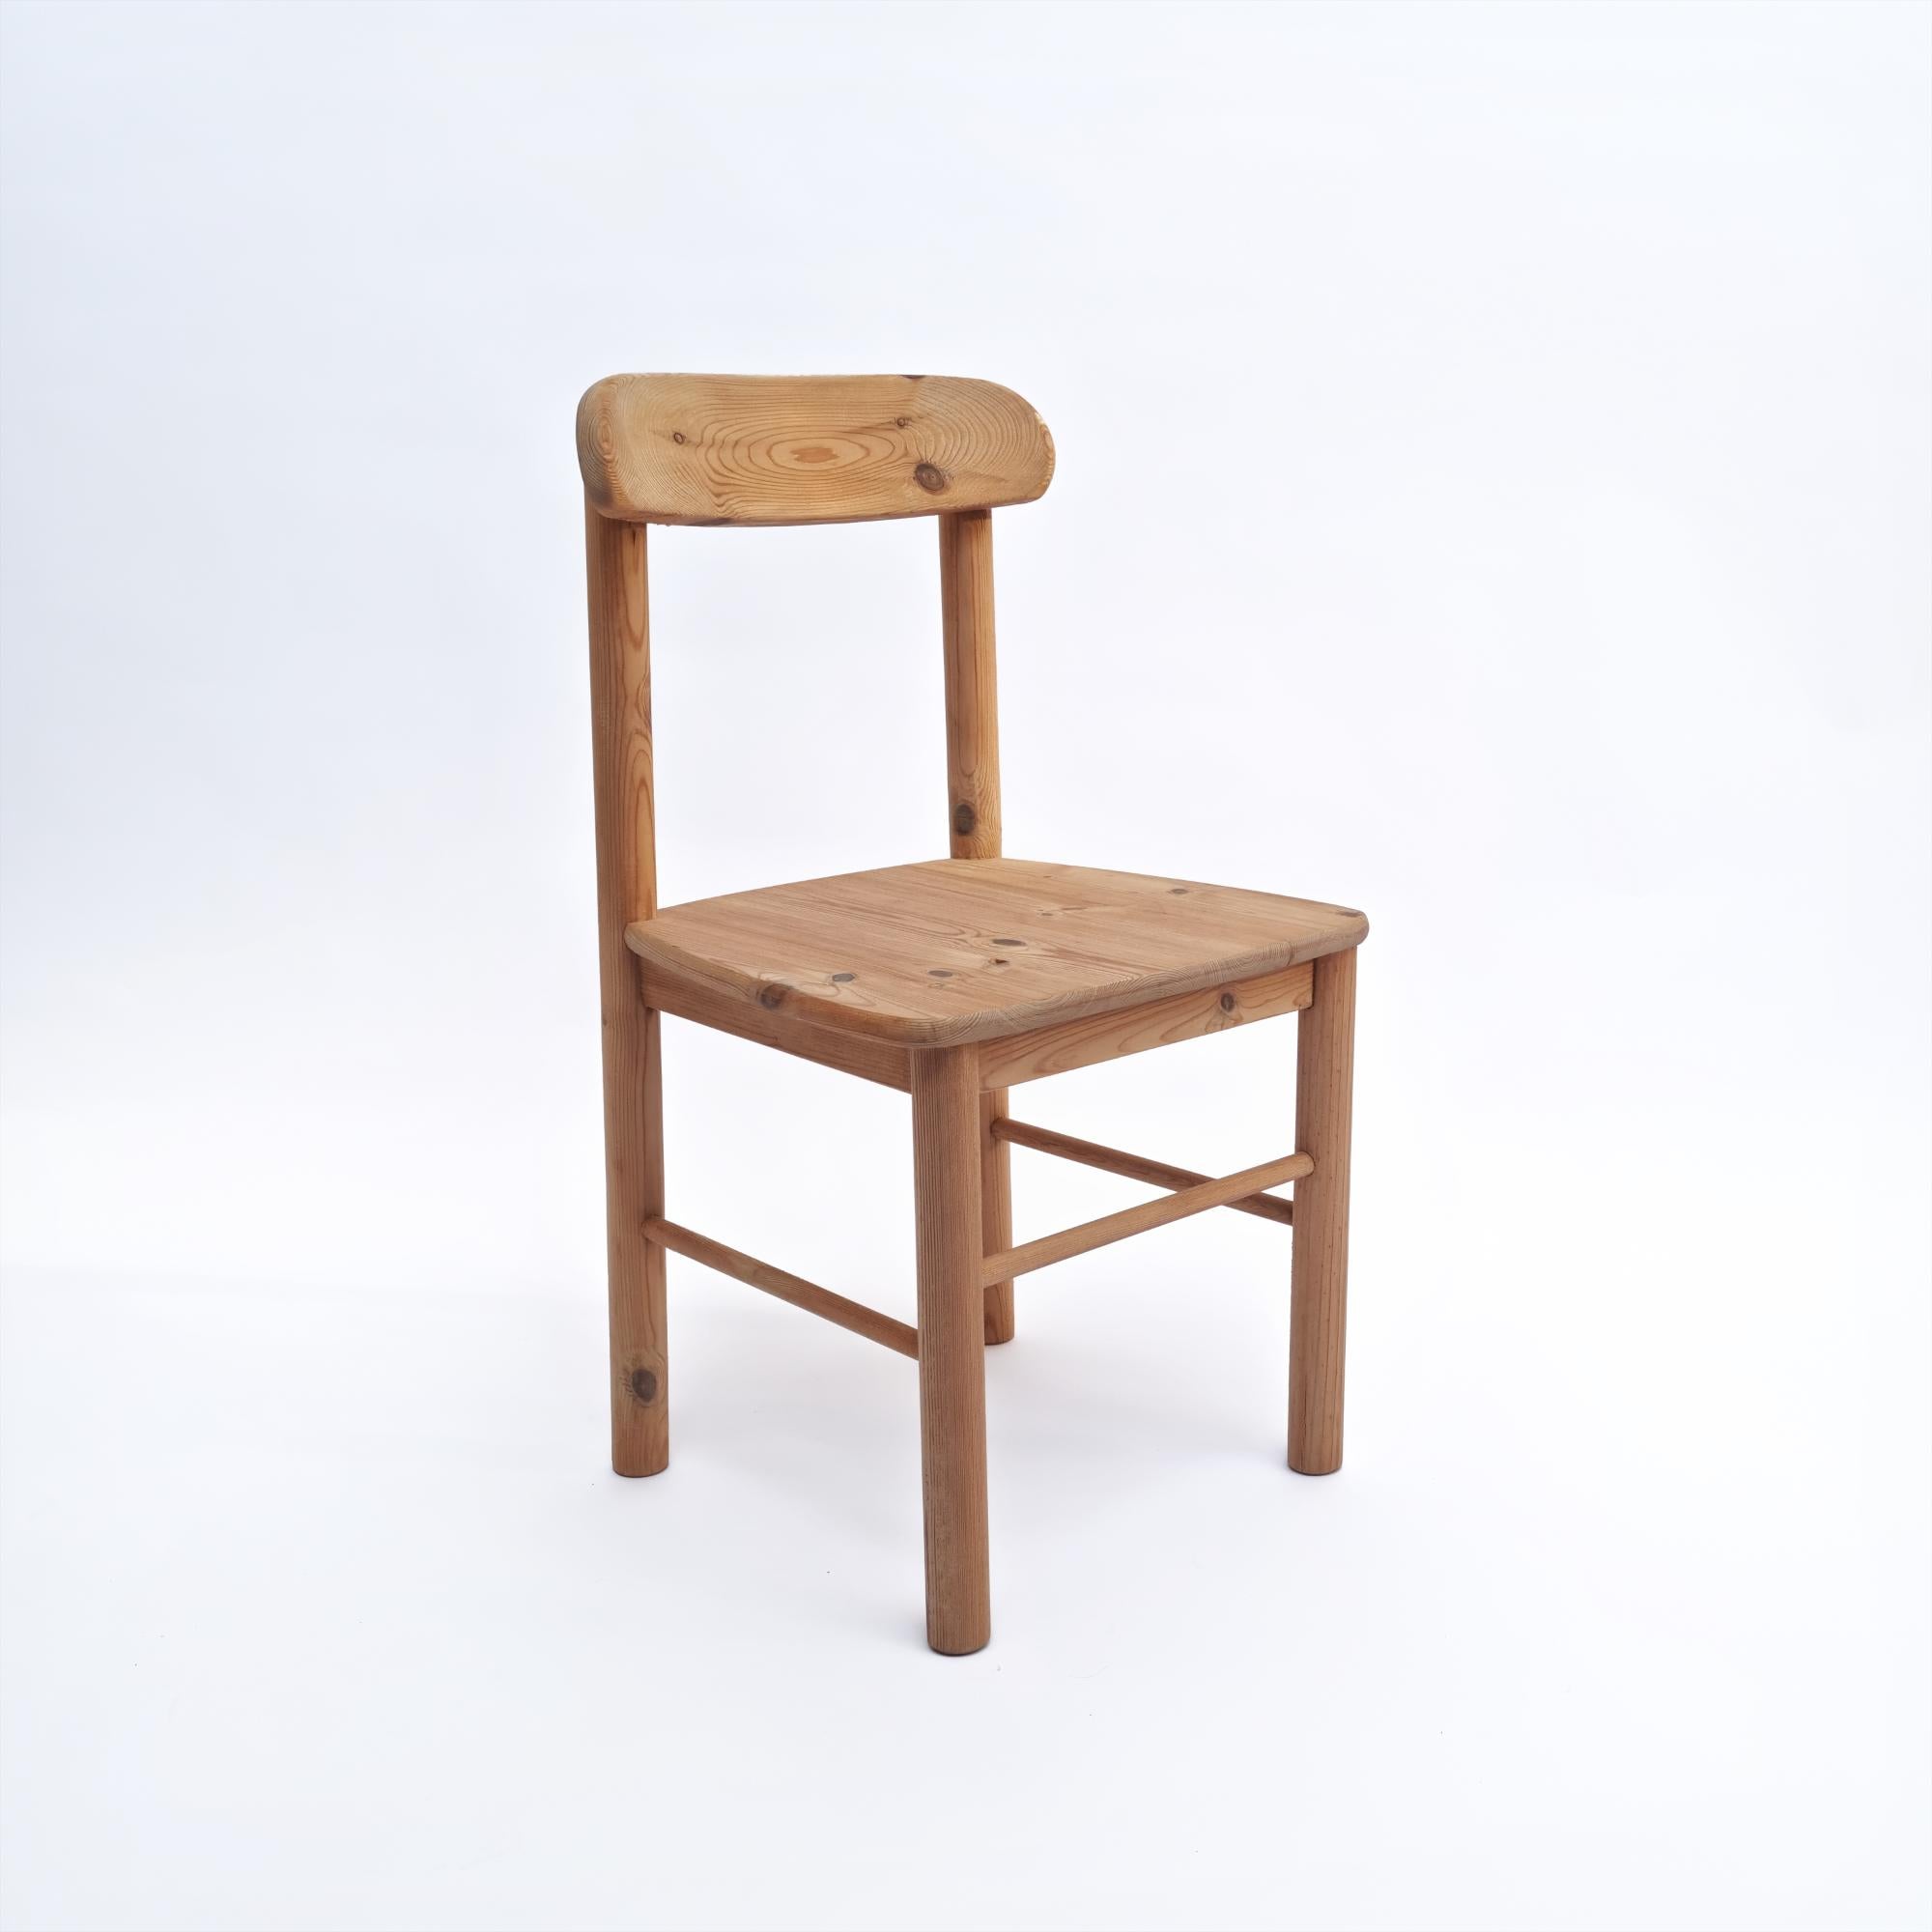 Chaises modernistes en bois de pin fabriquées de la même manière que les chaises conçues par Rainer Daumiller pour Hirtshals Saavaerk. Nous n'avons pas trouvé exactement cette version donc pour l'instant parlons à la manière de. Les chaises sont